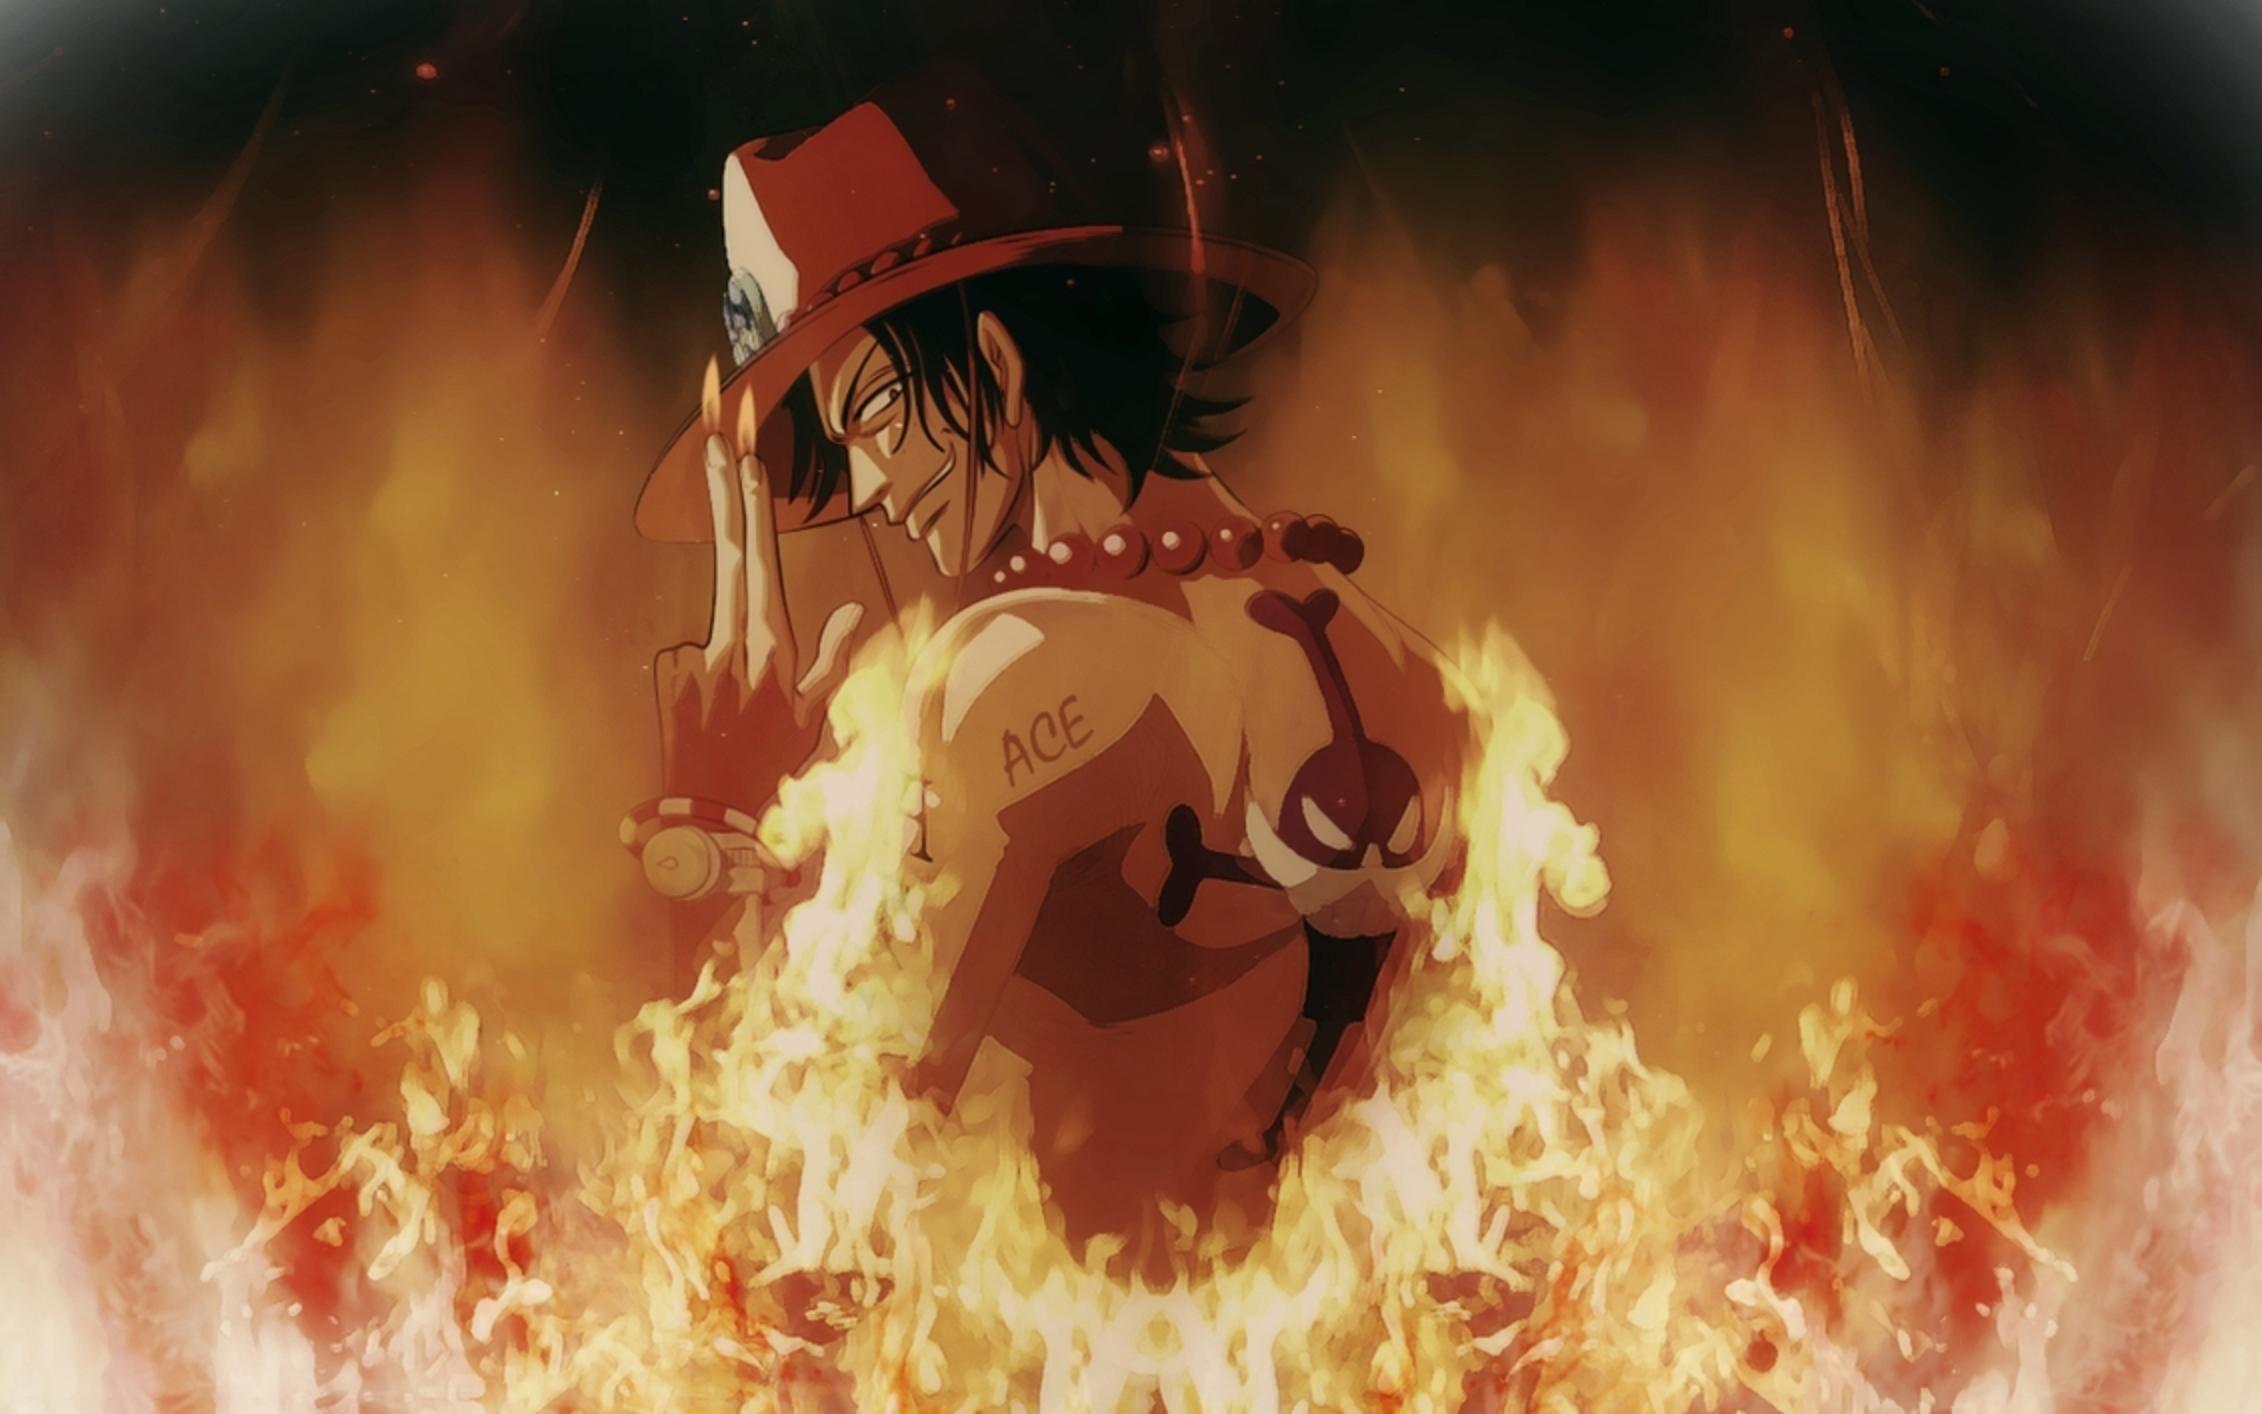 Bạn đam mê anime và đang tìm kiếm những hình nền đẹp liên quan đến One Piece Ace? Không nên bỏ qua Anime Wallpapers One Piece Ace - nơi chứa đựng những bức ảnh đẹp tuyệt vời về nhân vật cực kì phong cách này. Cùng trải nghiệm và tận hưởng mọi cảm xúc khi ngắm nhìn.